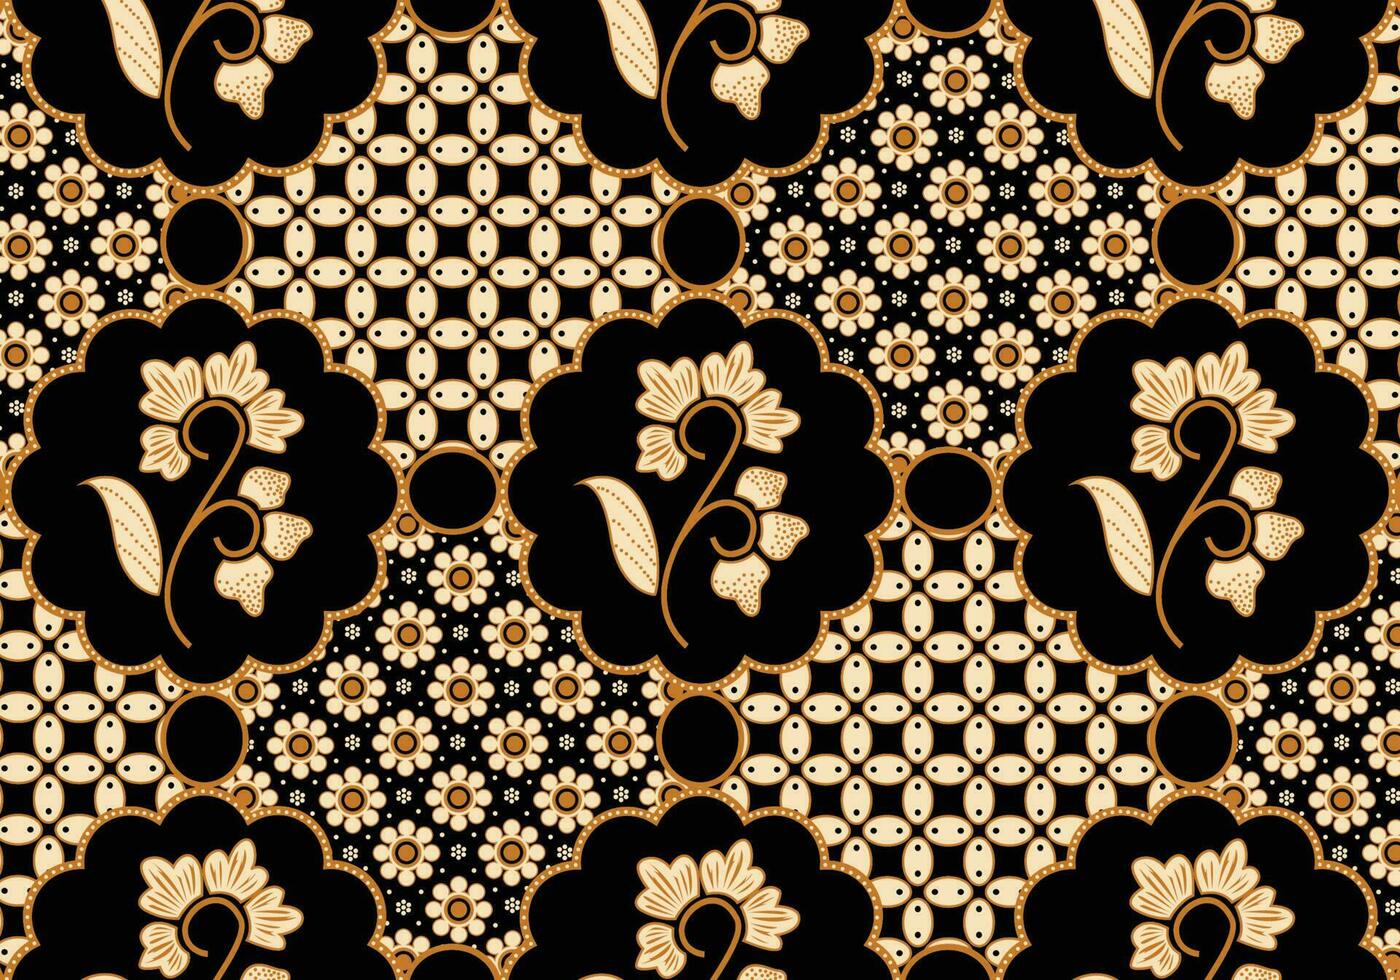 batik mönster indonesiska är en Metod av vaxbeständig färgning applicerad till hela trasa, eller trasa tillverkad använder sig av detta Metod har sitt ursprung från Indonesien. batik är tillverkad antingen förbi teckning prickar och rader vektor